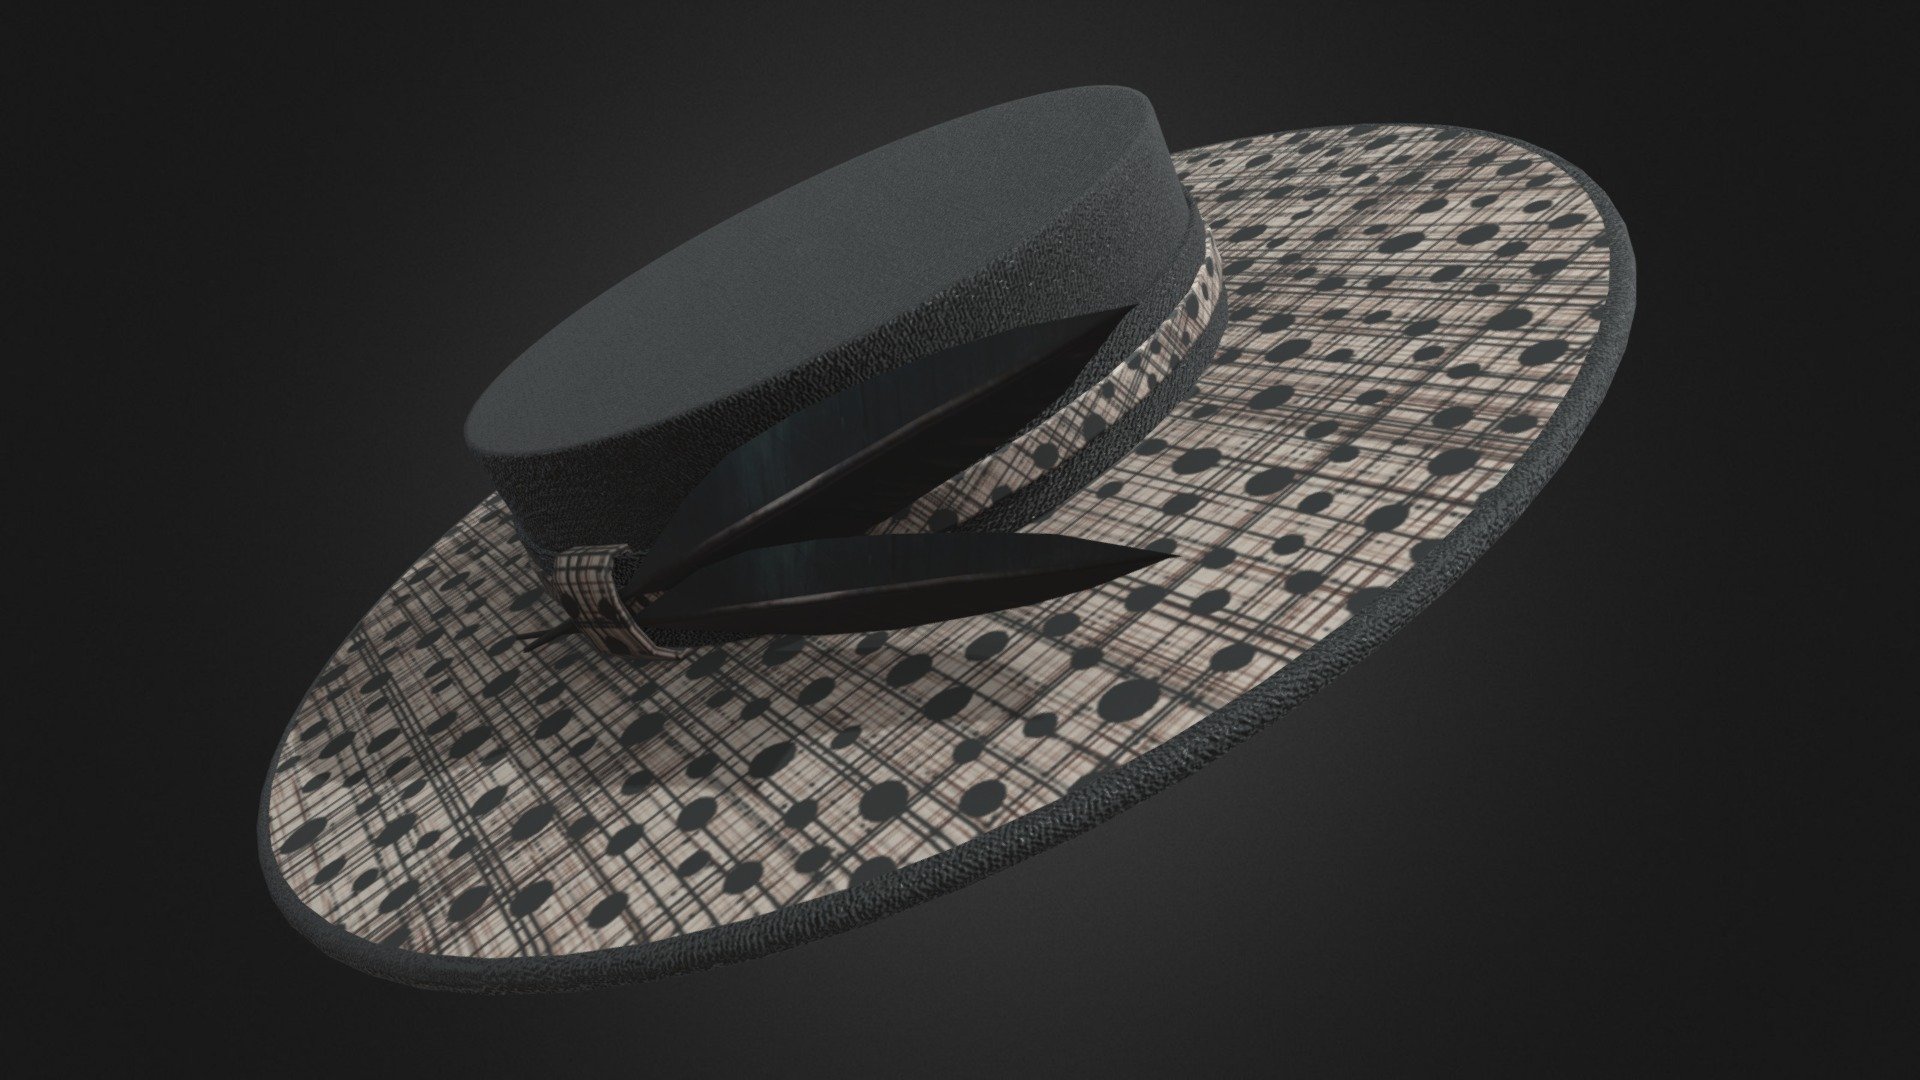 Arquivo feito p/ Spark Ar ( Filtro do Instagram e Outros ) - HAT BLACK FINE STRAW - 3D model by Rbone3D 3d model